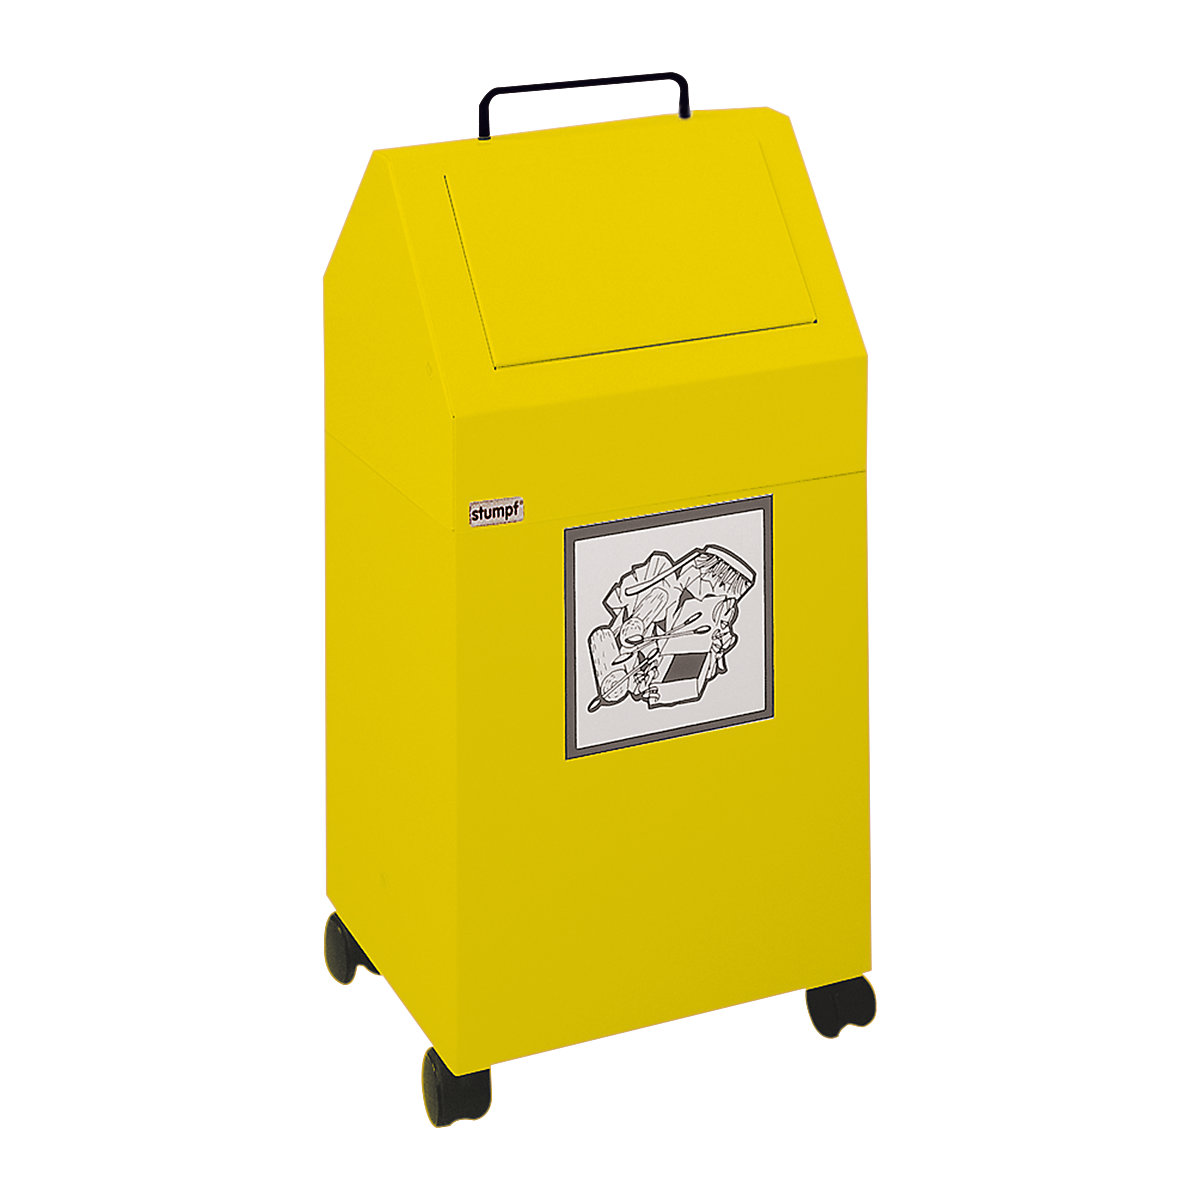 Afvalbak voor kringloopmateriaal met inwerpklep, inhoud 45 l, b x h x d = 320 x 710 x 310 mm, verrijdbaar, geel RAL 1003-6